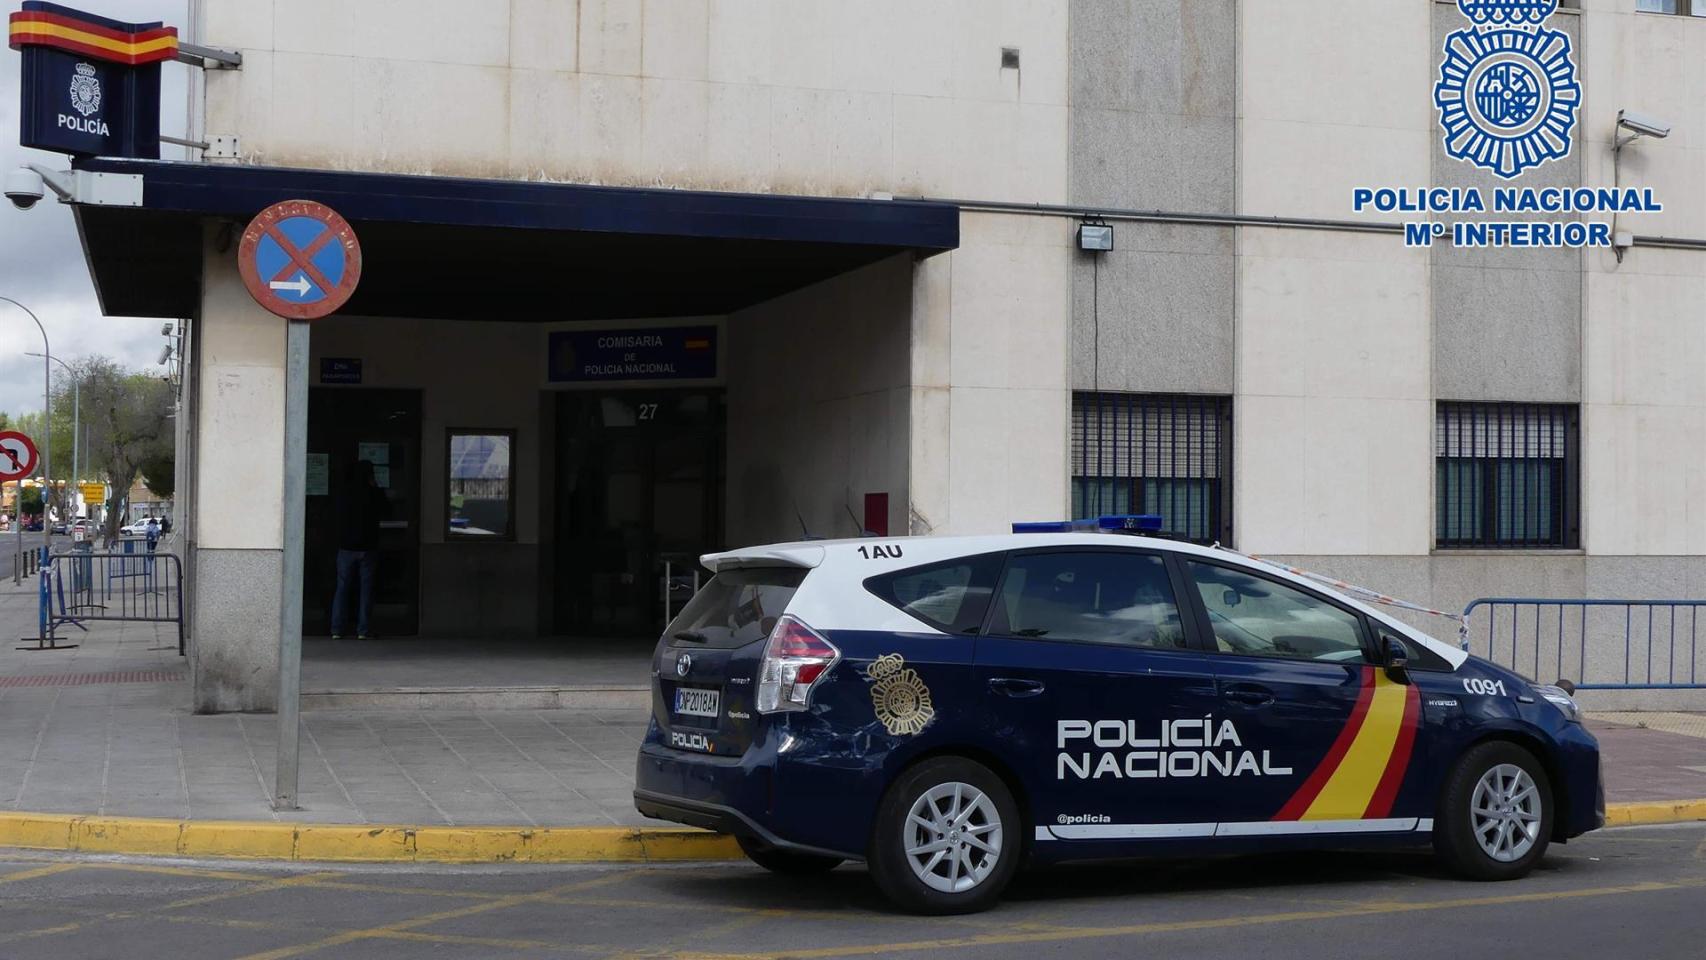 Comisaría de la Policía Nacional en Ciudad Real